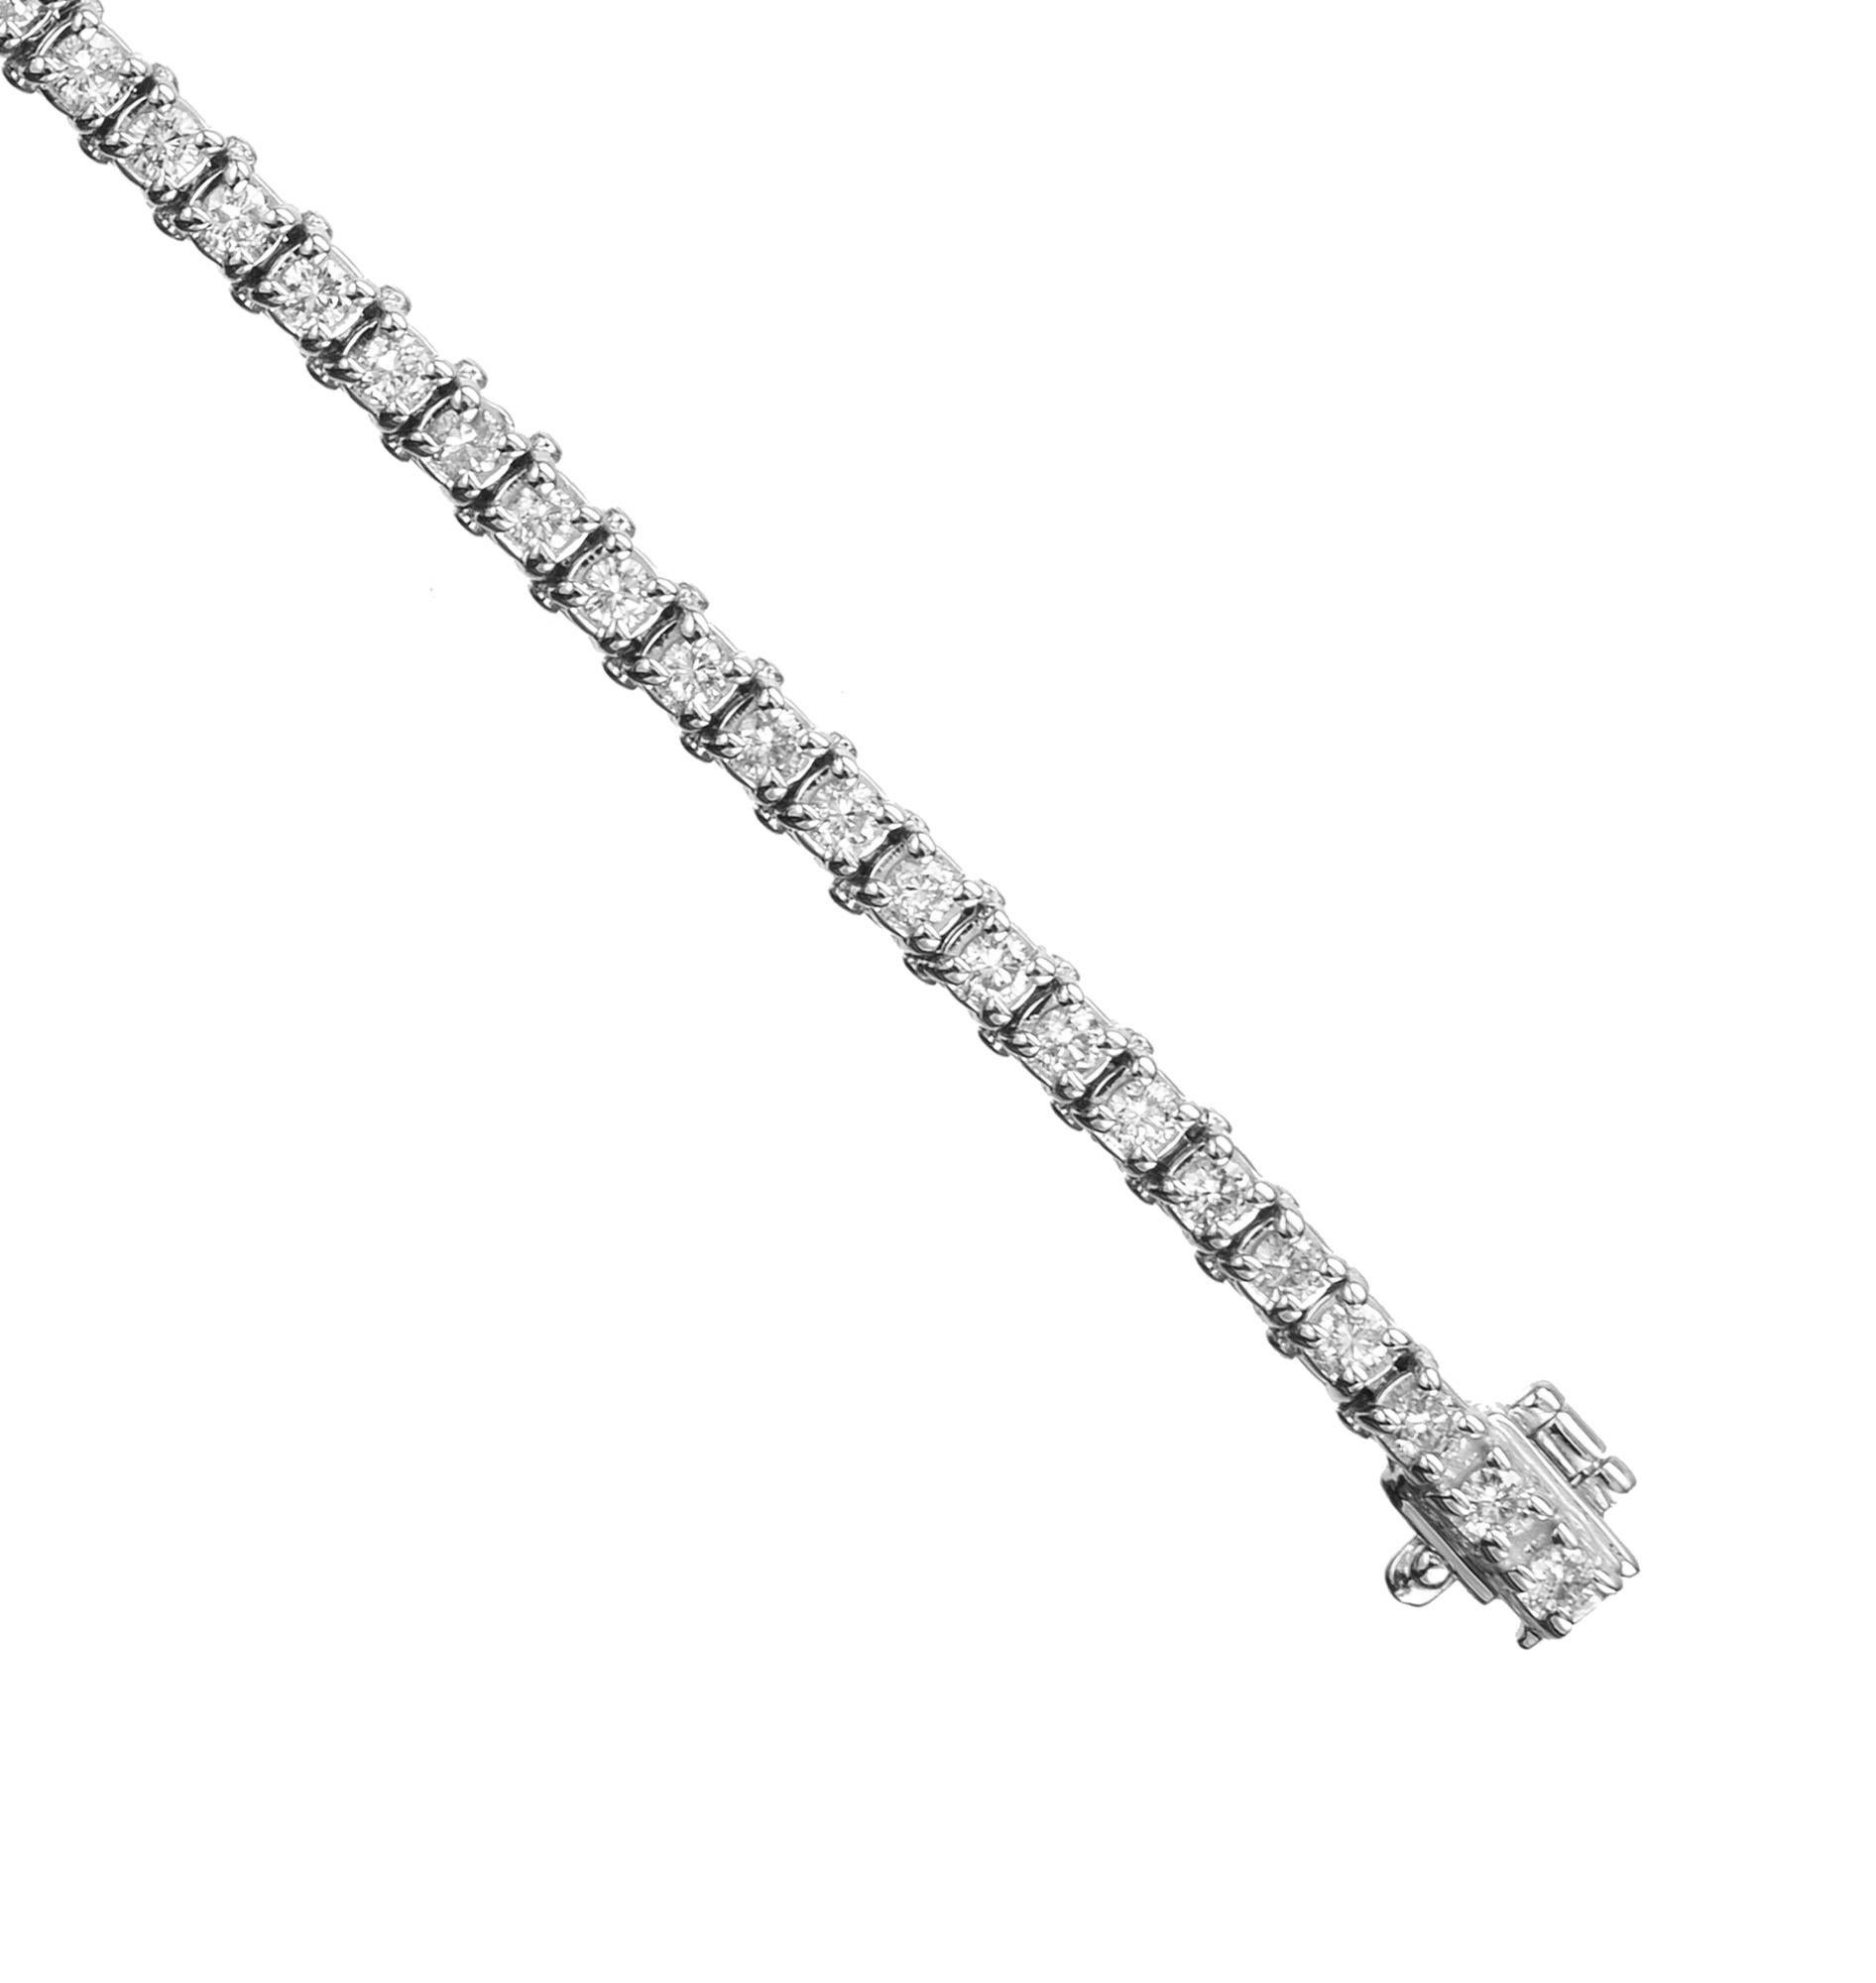 Klassisches Diamant-Tennisarmband. Geschmückt mit 62 runden Diamanten im Brillantschliff mit einem Gesamtgewicht von 1,60 ct., gefasst in 14 Karat Weißgold. Die Diamanten glänzen und funkeln und fangen das Licht bei jeder Bewegung ein. Dieses